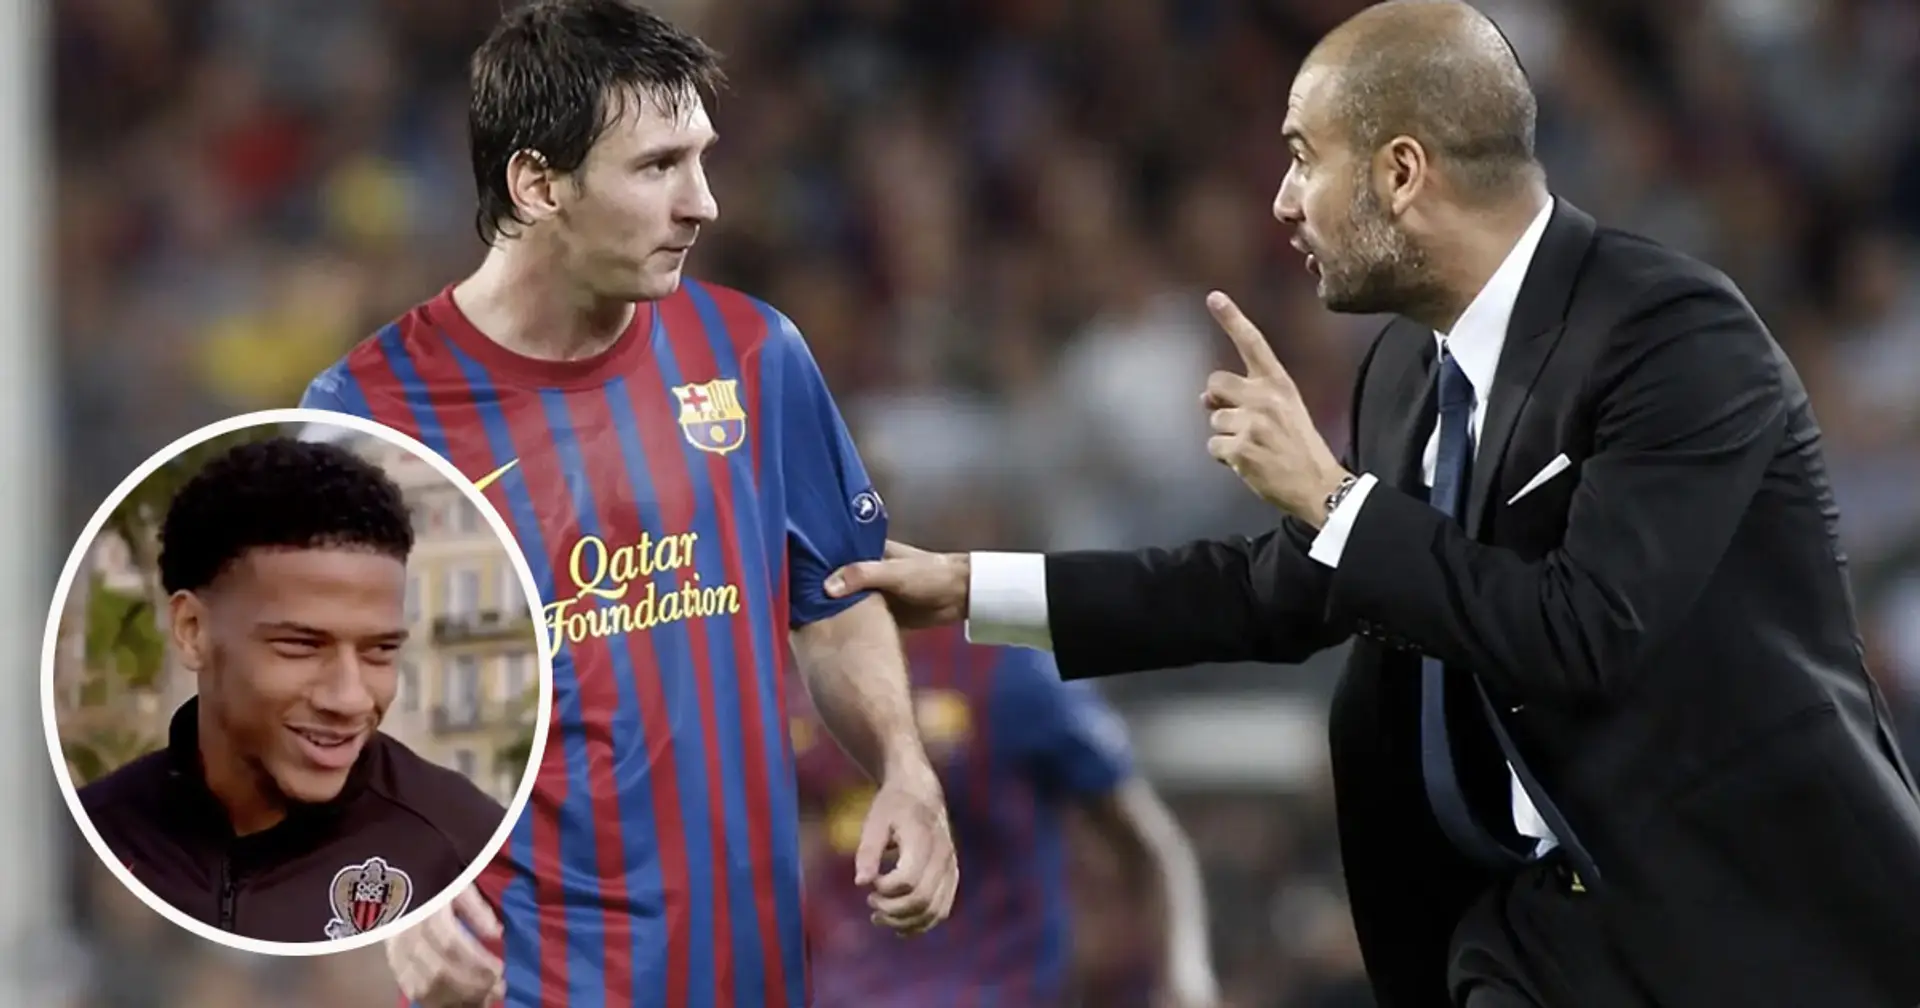 '¡Nos prohibieron hacer eso!': ex jugador del Barça revela una extraña regla en entrenamientos que involucra a Messi